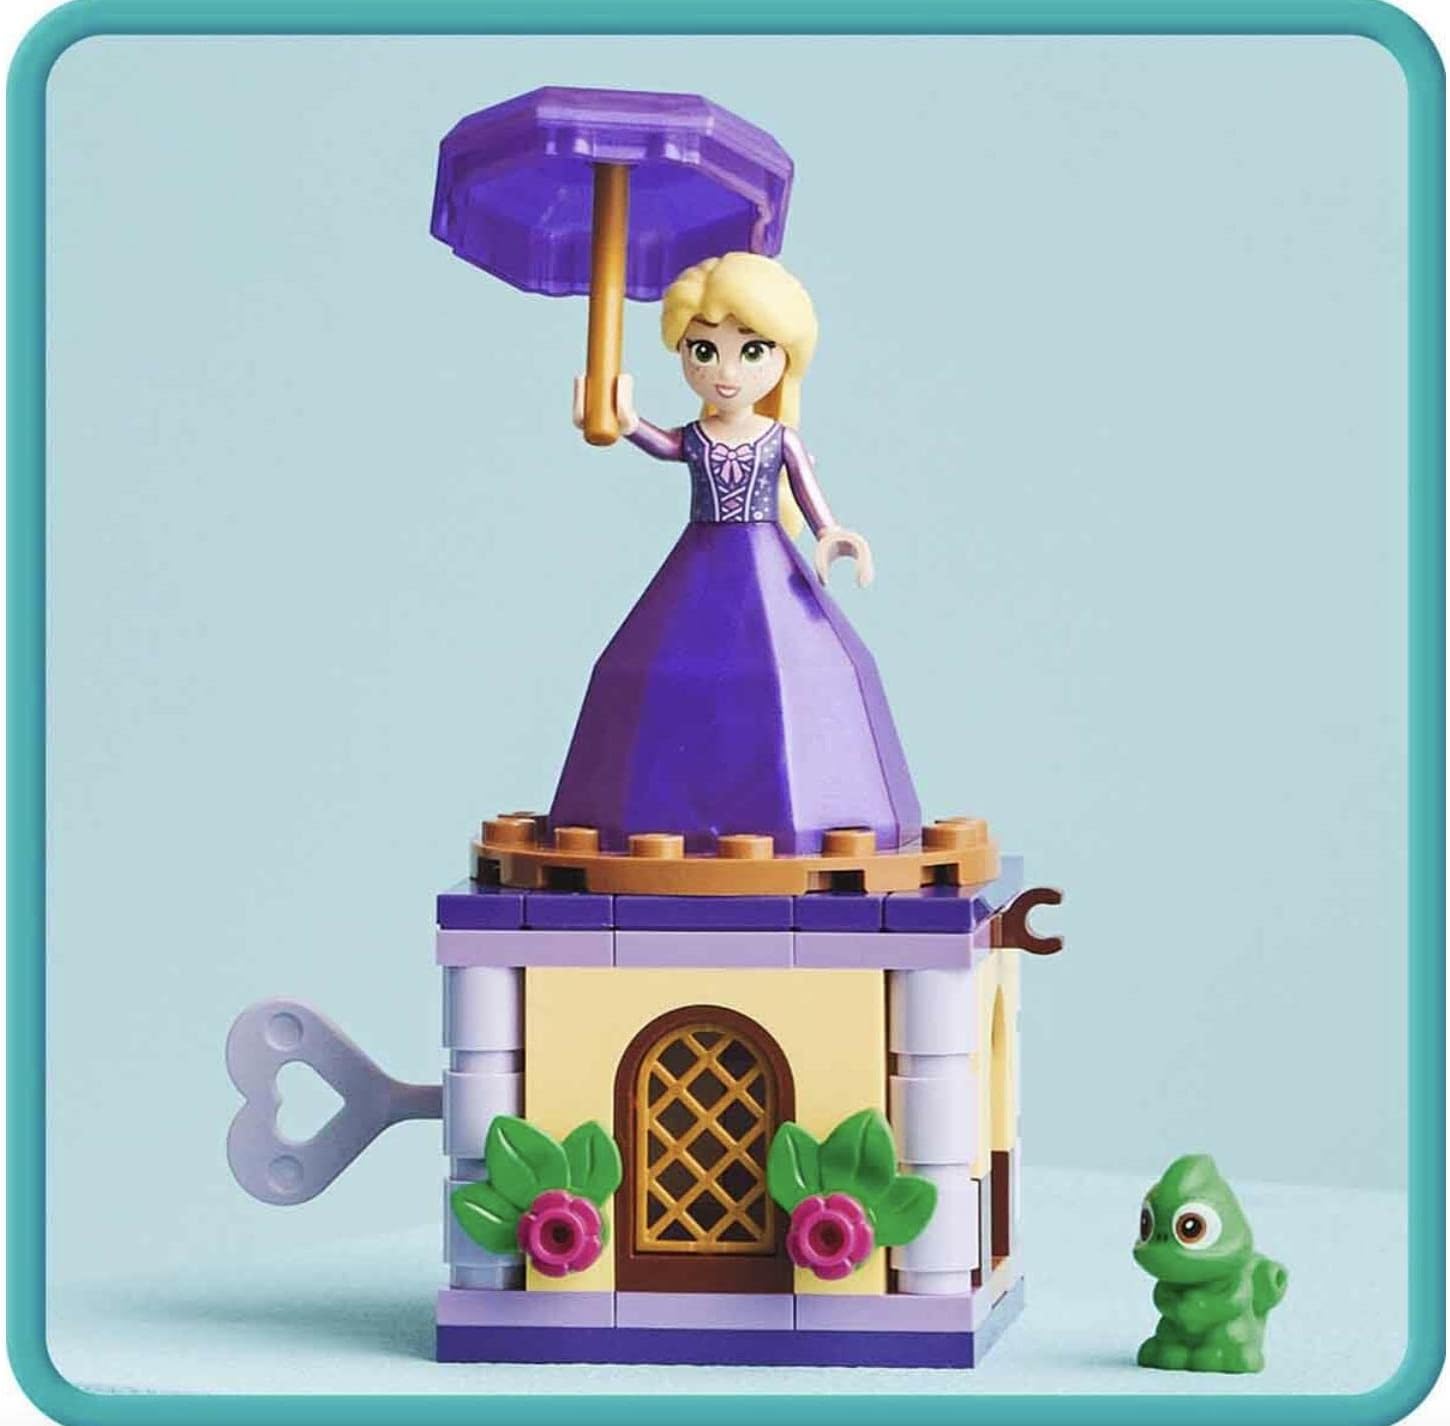 LEGO Disney Princess Twirling Rapunzel, Building Block Kids Toy, Age 5+, 43214 (89 Pieces)